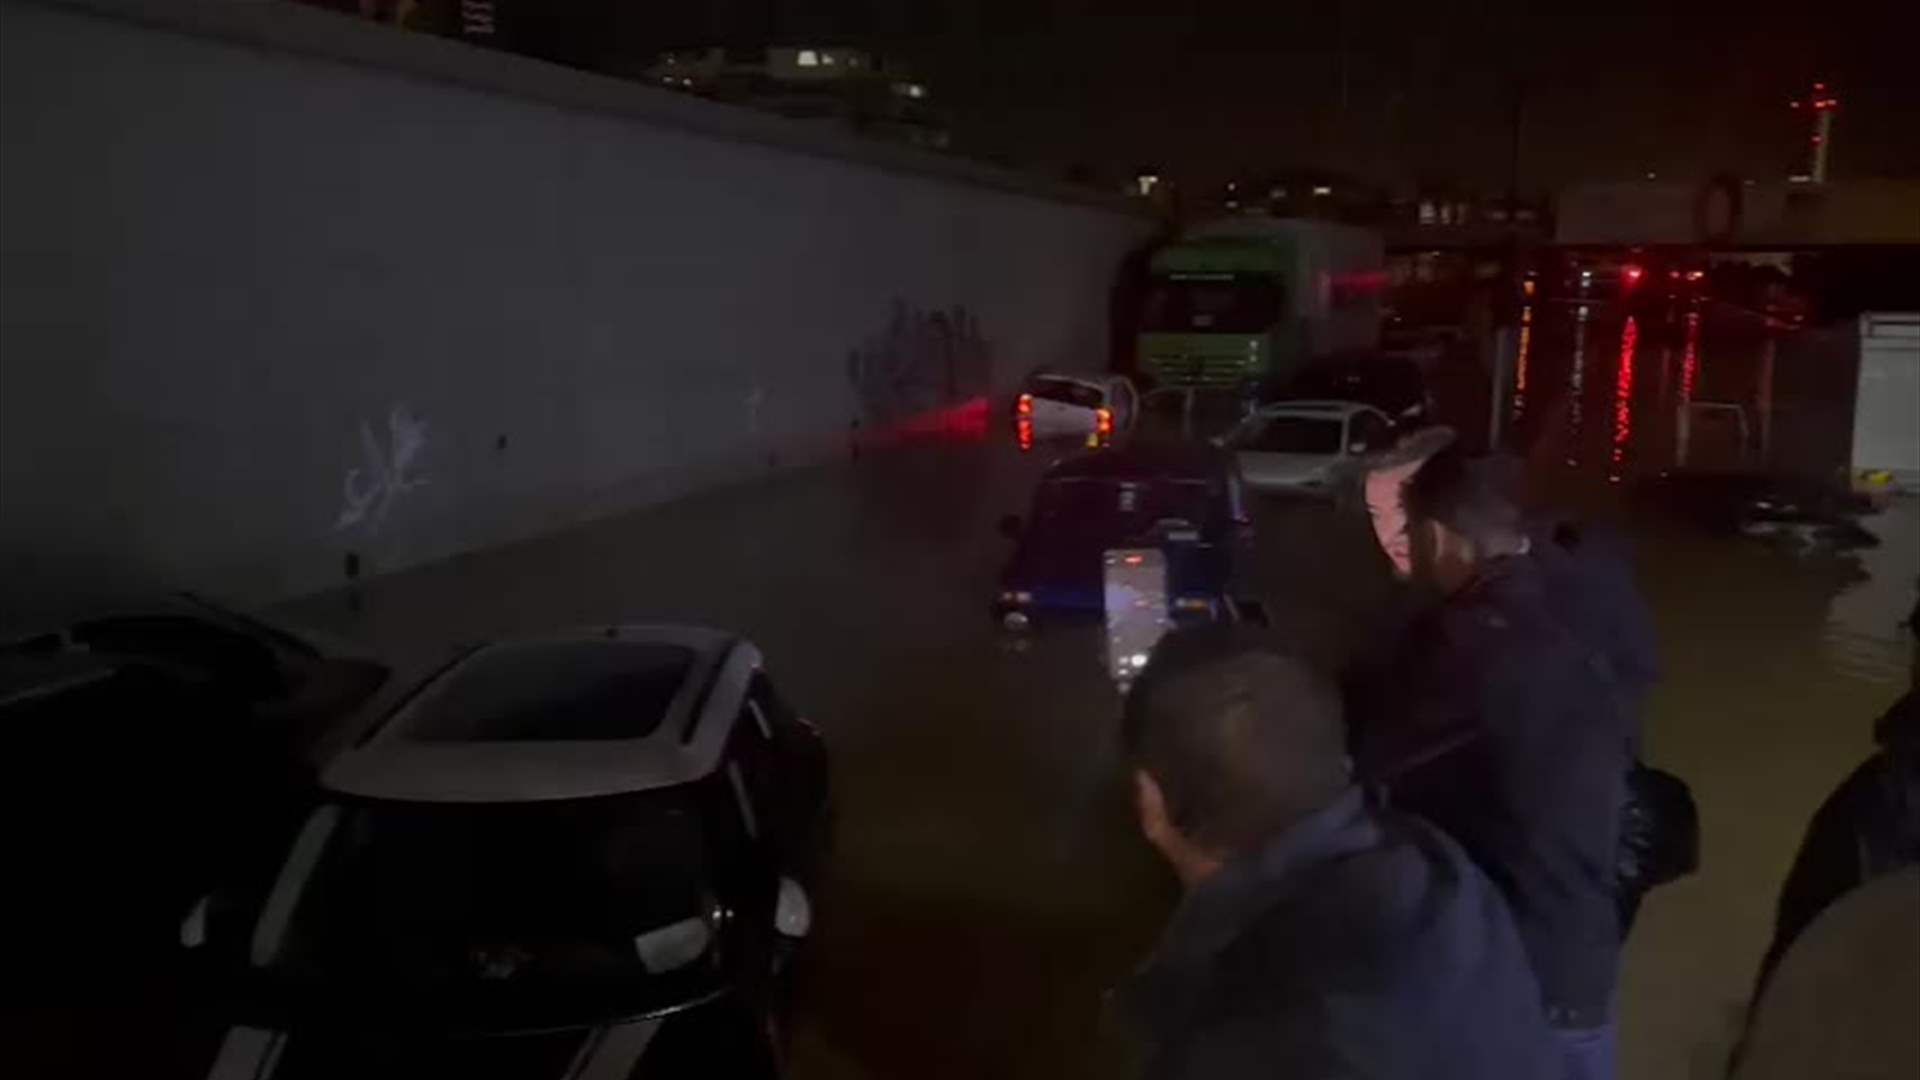 بعد الأمطار الغزيرة... طرقات عائمة بالمياه ومواطنون عالقون في سياراتهم (فيديوهات)